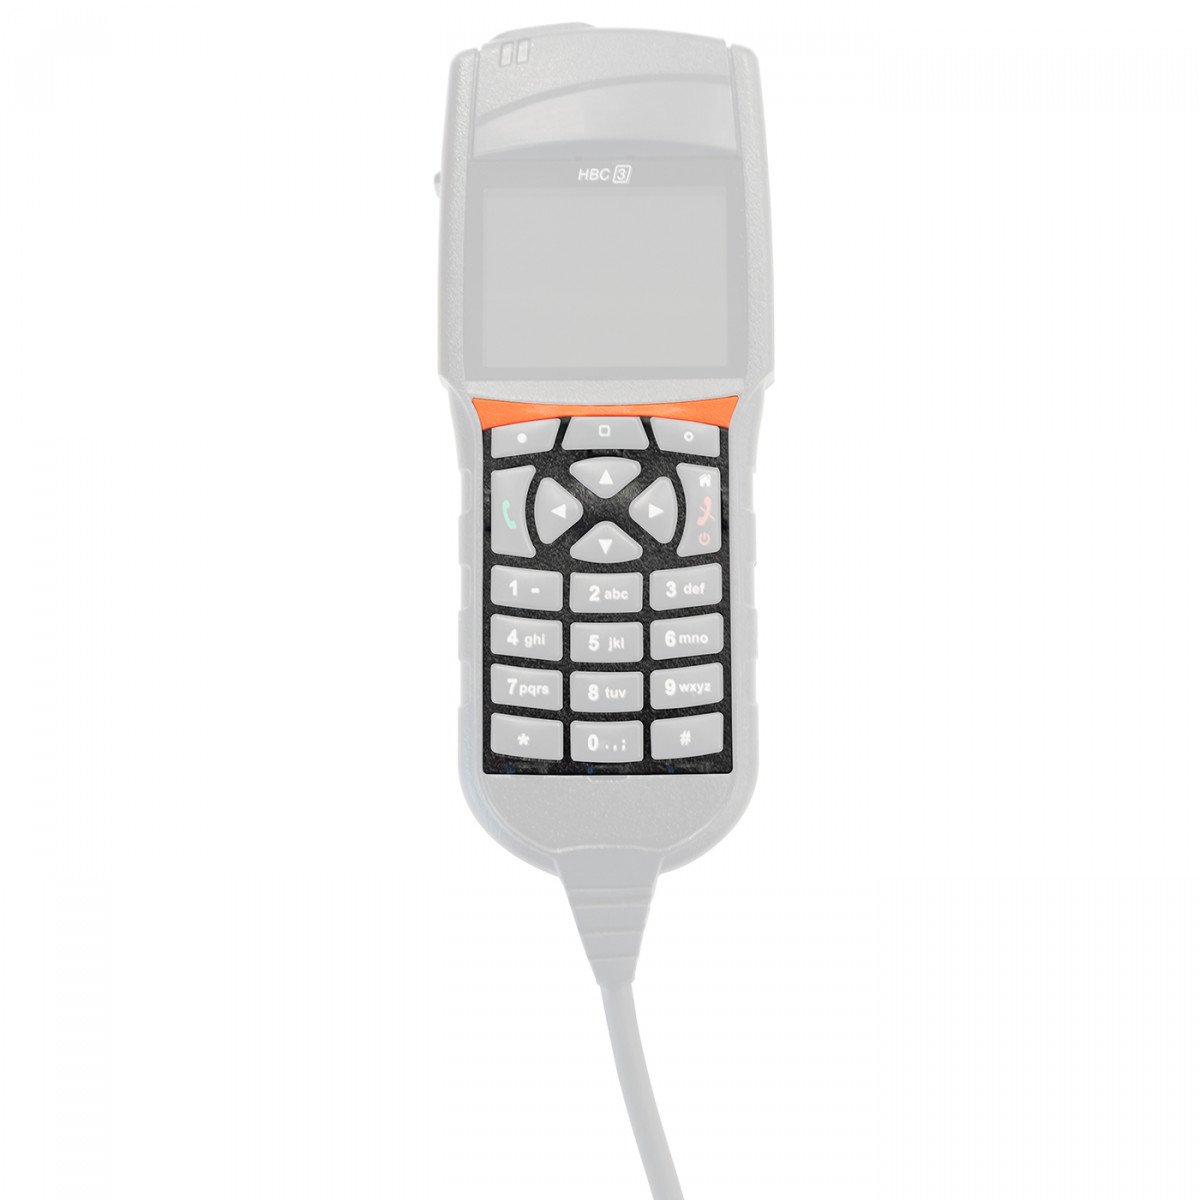 SEPURA Tastaturrahmen, mit orange fluoreszierender Leiste, für Sepura HBC3 700-00821 EINZELN